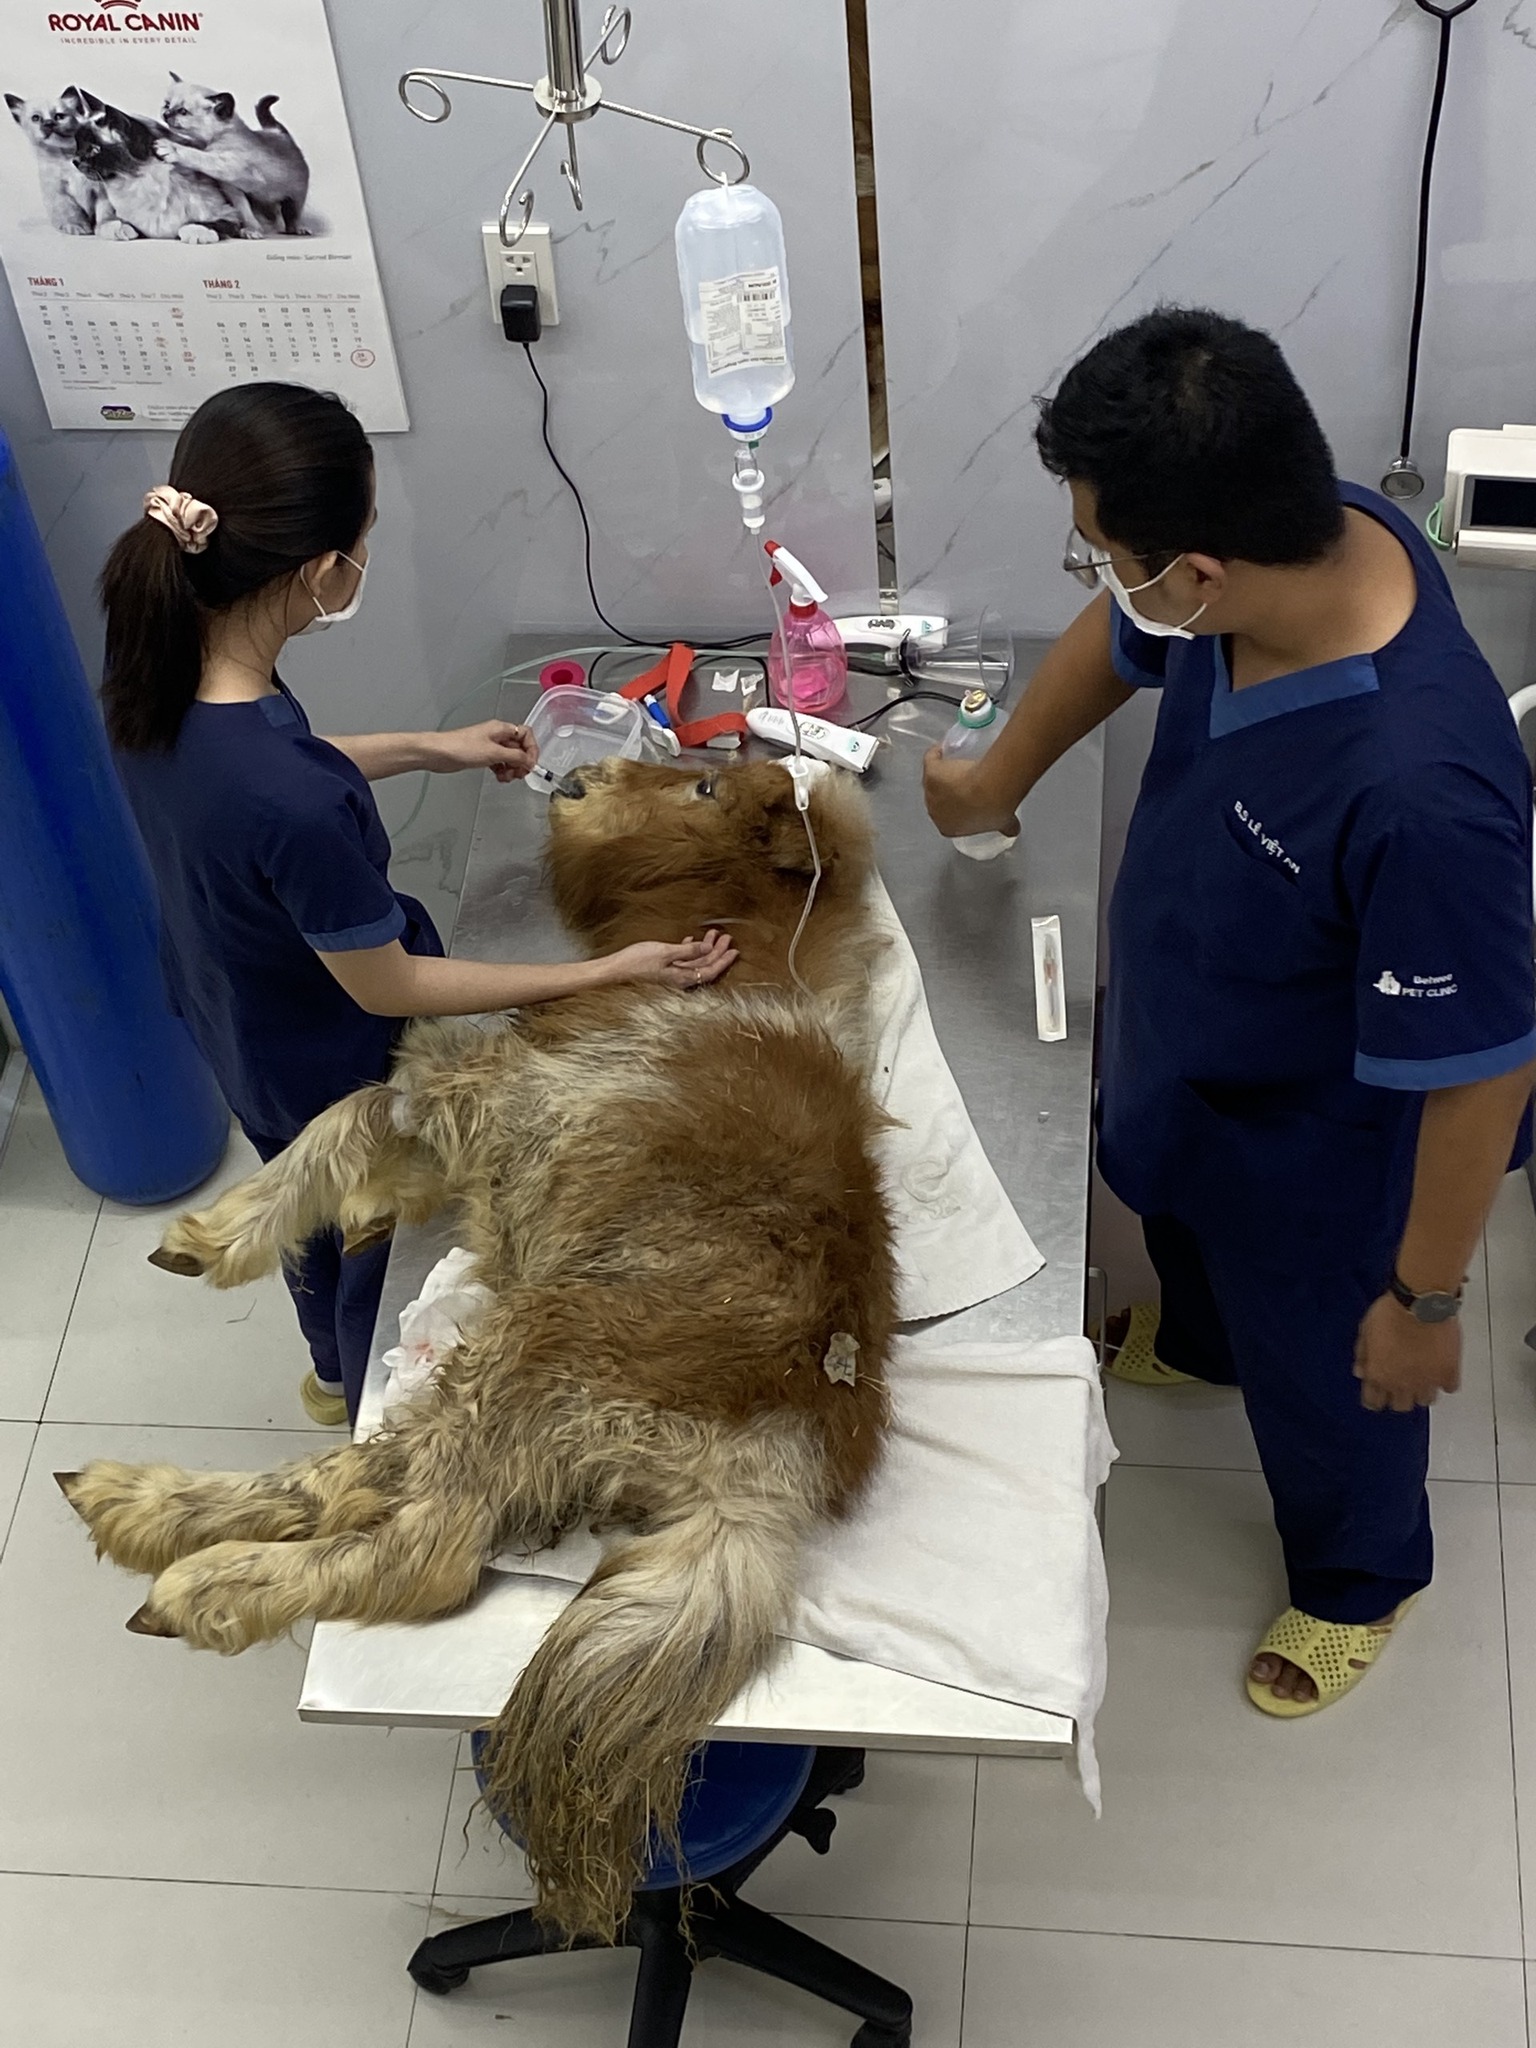 Nếu Quý khách đang tìm phòng khám thú y gần đây nhất, hệ thống phòng khám thú y Belwee trong thành phố Hồ Chí Minh có thể gần quý khách nhất giúp Quý khách tiện lợi đưa thú cưng đi khám và điều trị tại phòng khám thú y hàng đầu tại TpHCM